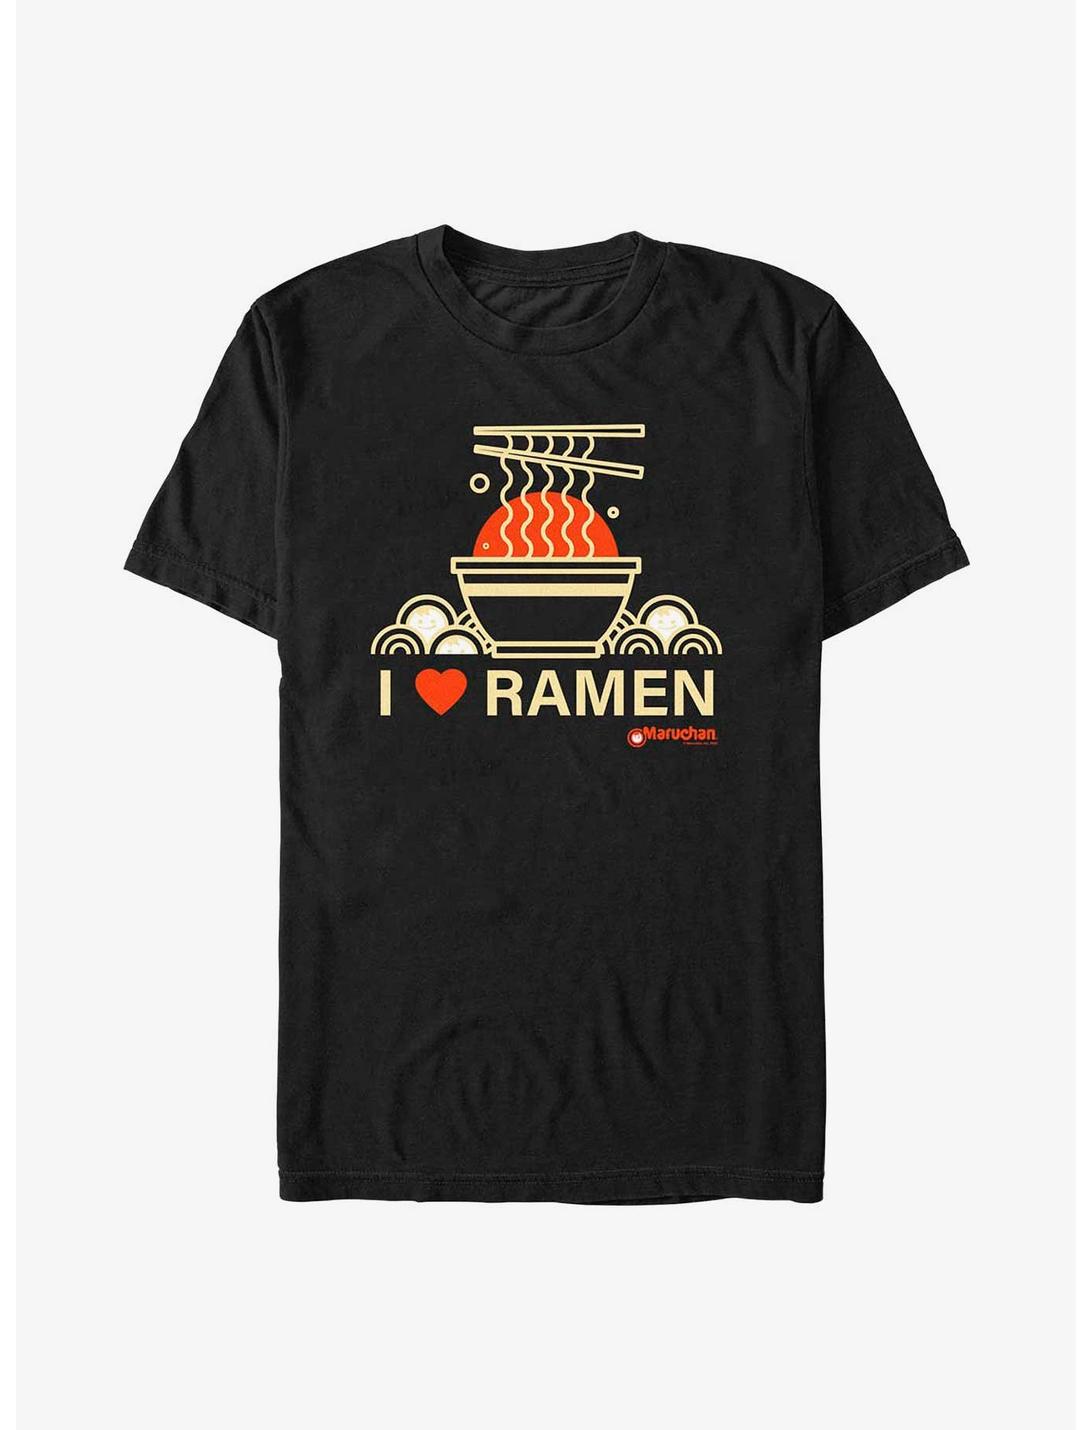 Maruchan Heart Ramen 4Eva T-Shirt, BLACK, hi-res